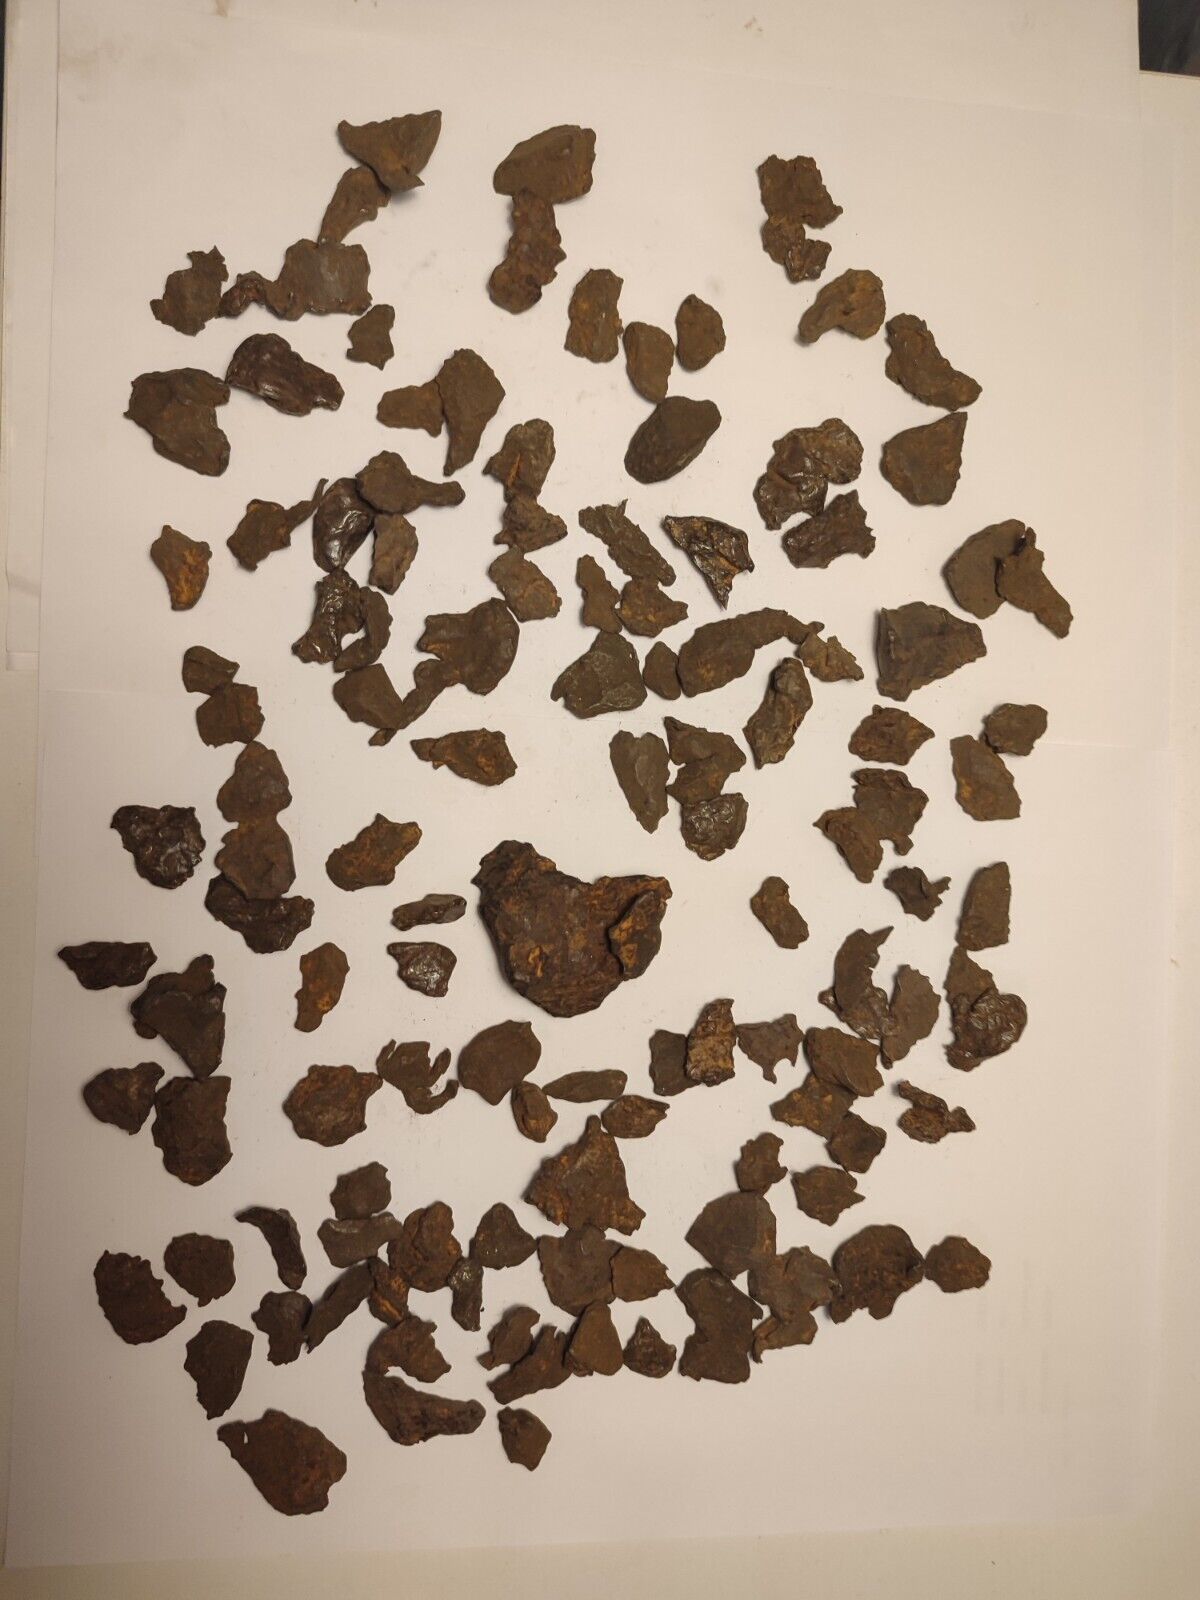 Sikhote Alin meteorite 1 Kilo Lot 2-83gr